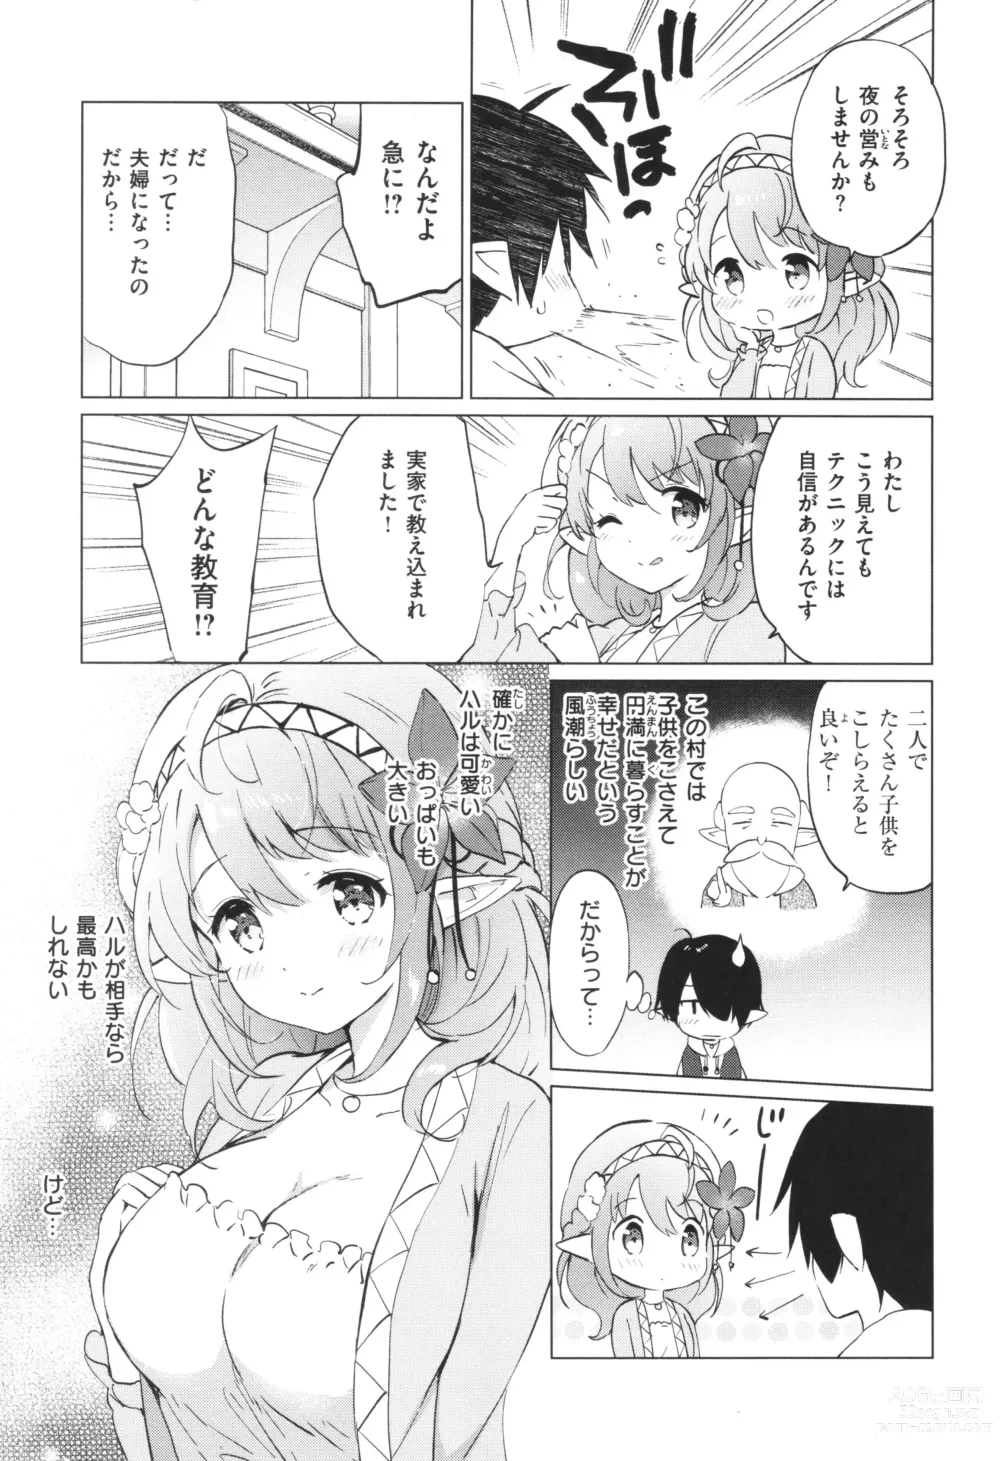 Page 10 of manga Mitsugetsu Paradise - Honeymoon Paradise